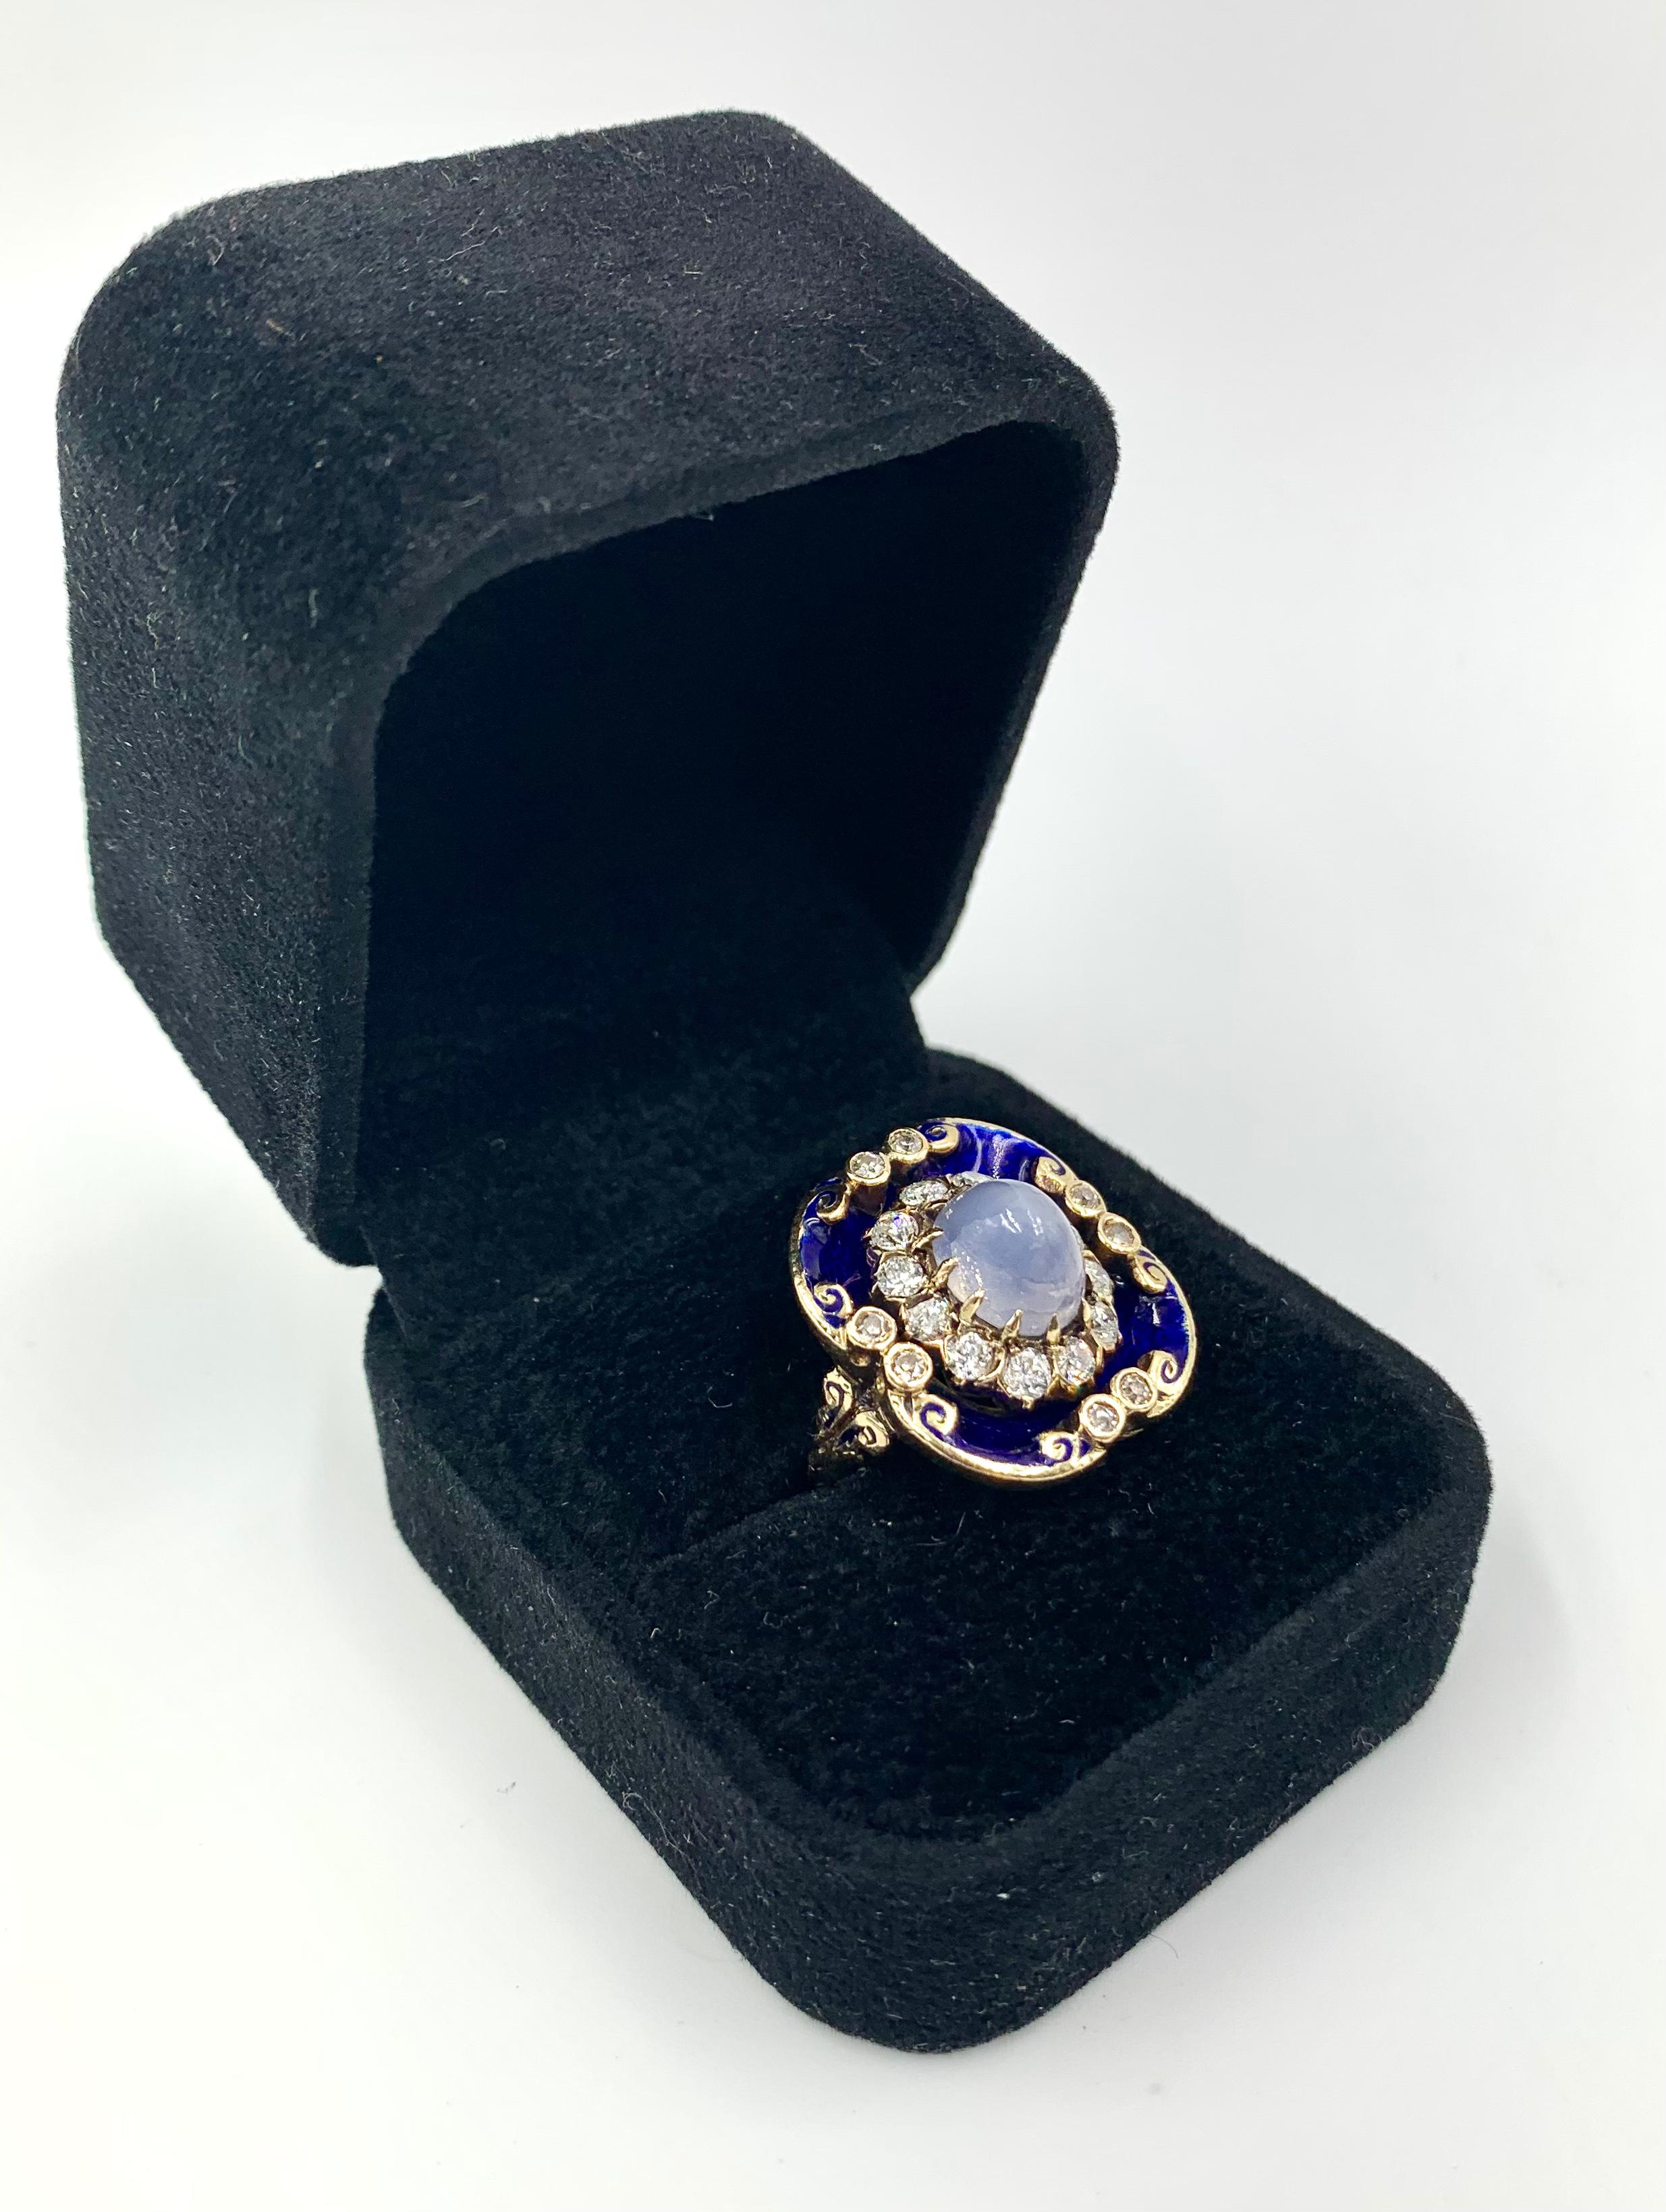 Atemberaubende Georgian Periode Cabochon Stern Saphir, Diamant, Kobalt blau Guilloche-Emaille 14K Goldring.
CIRCA 1830
Dieser schöne antike Ring stammt aus der Zeit von George IV/Regency. Die georgianische Schmuckära (1714-1837) wird weithin für